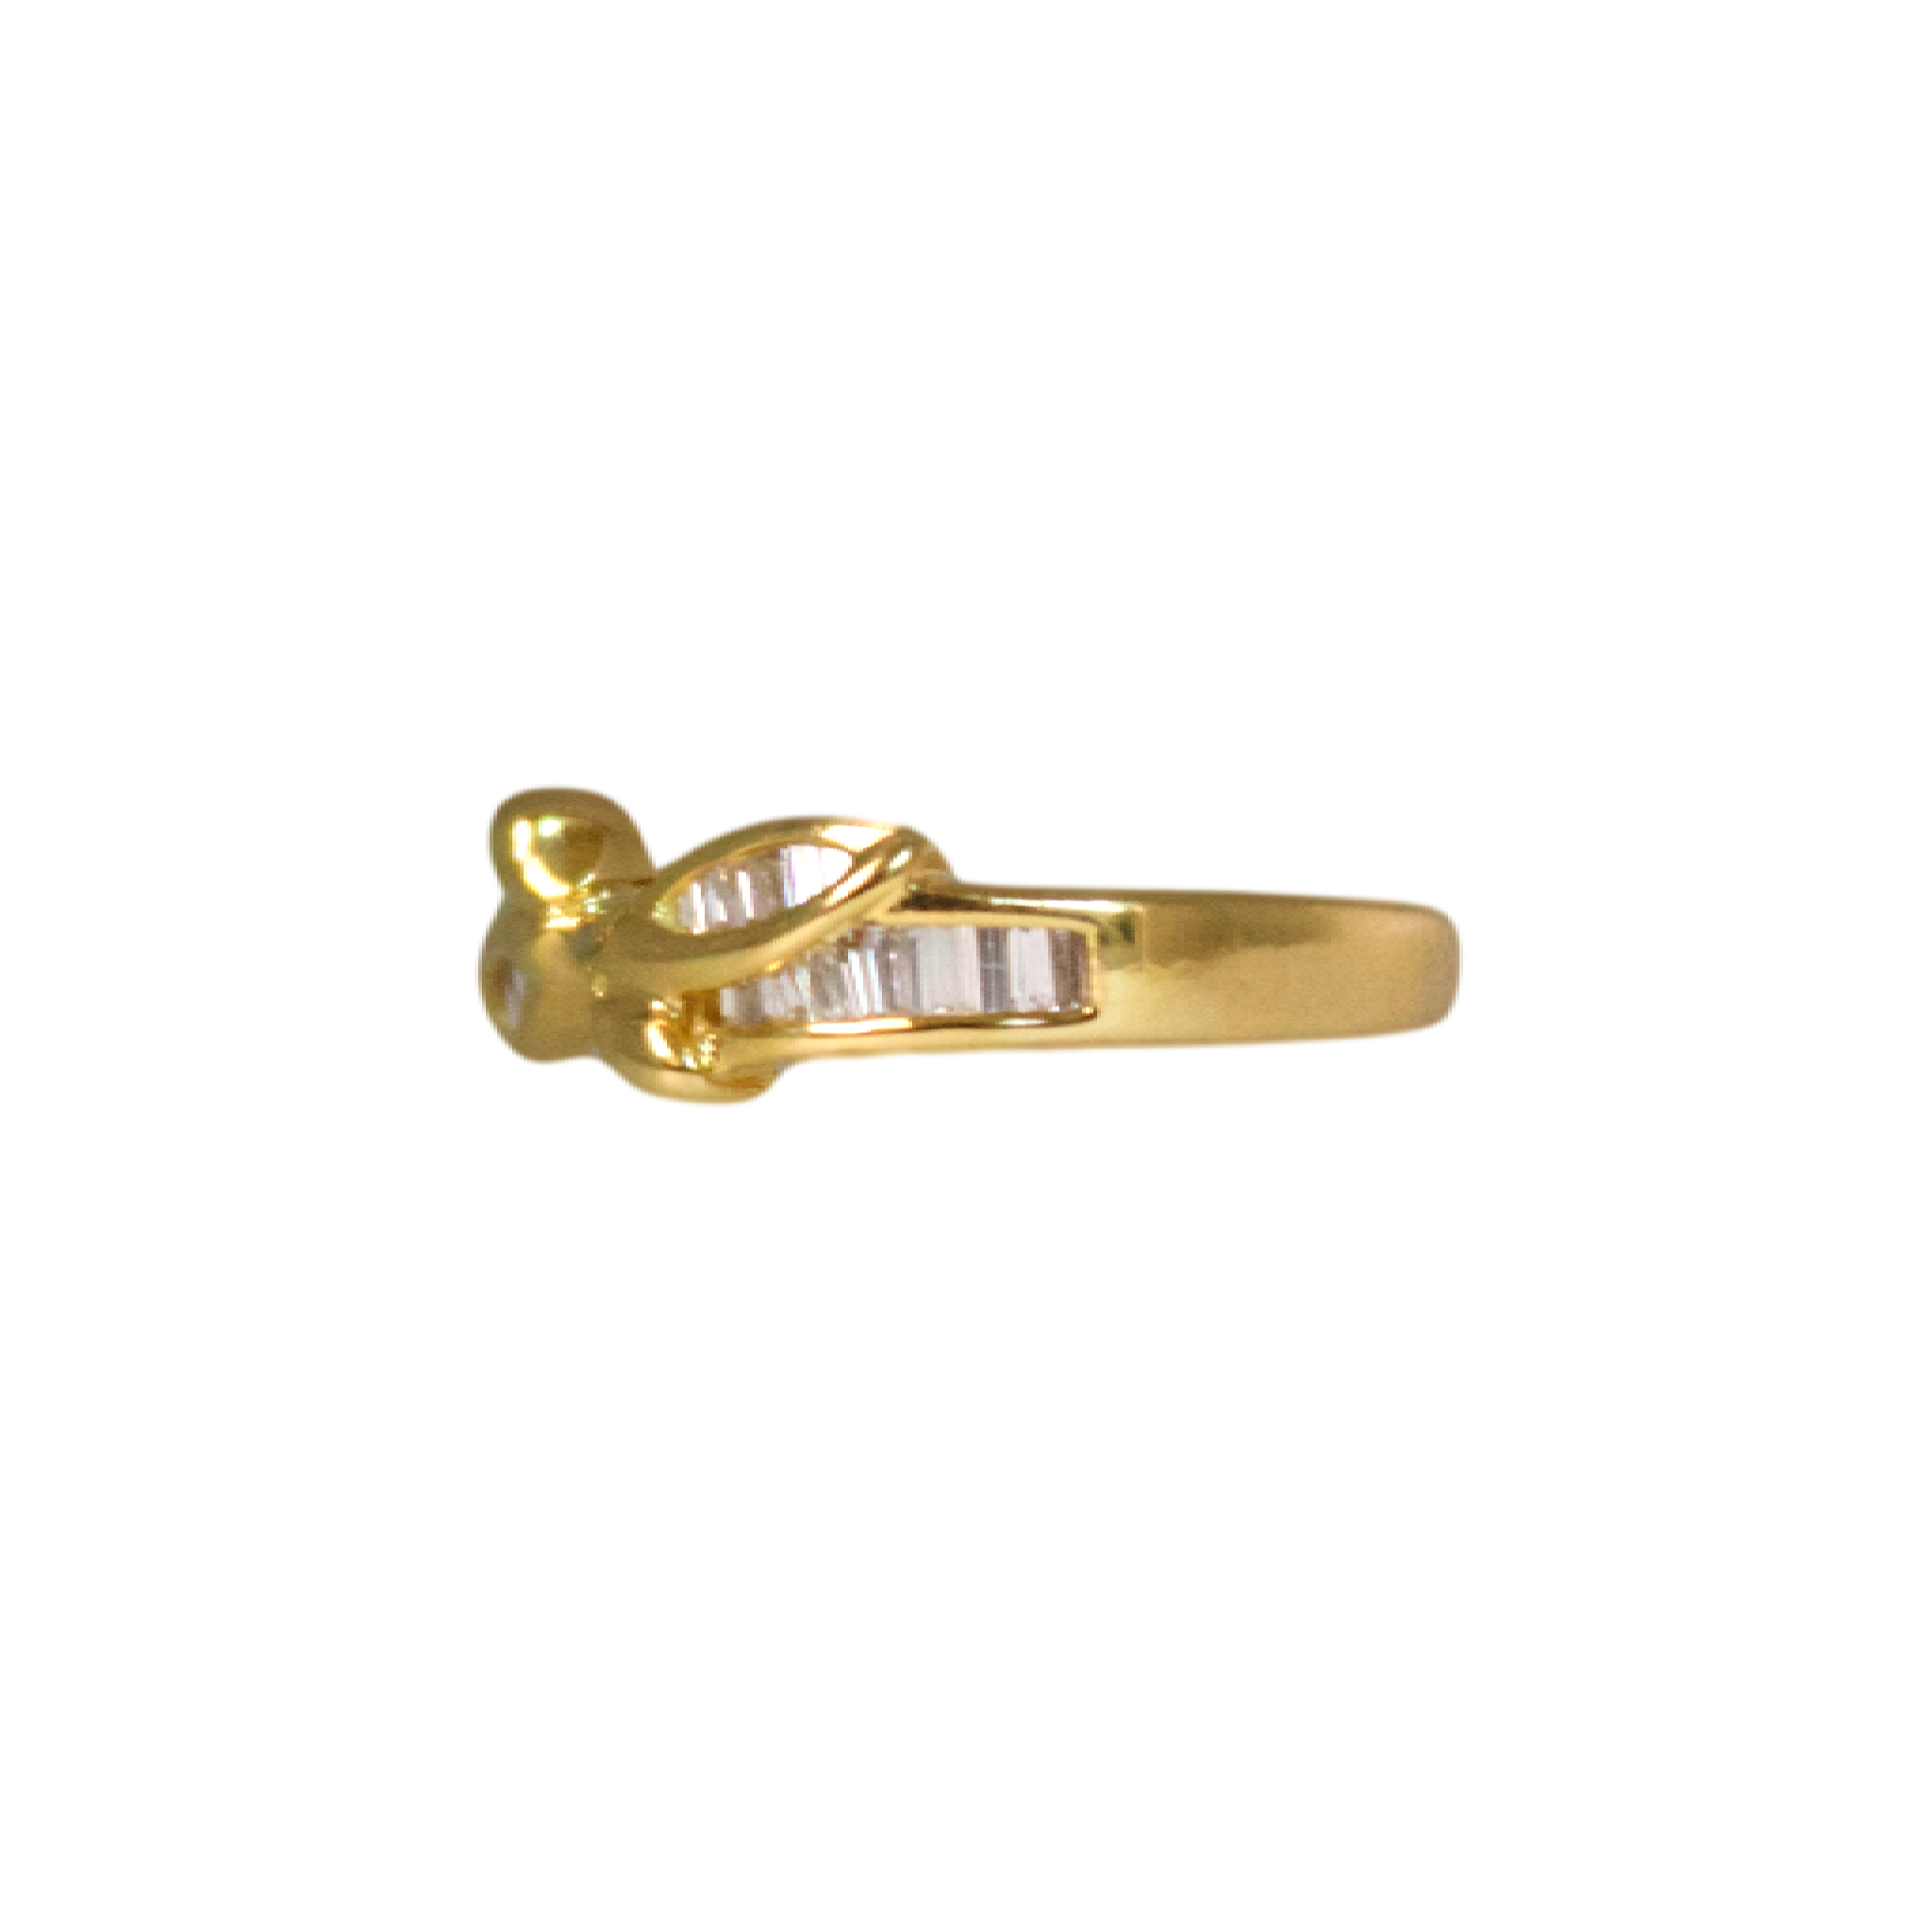 Gold Baquette Diamond Ring